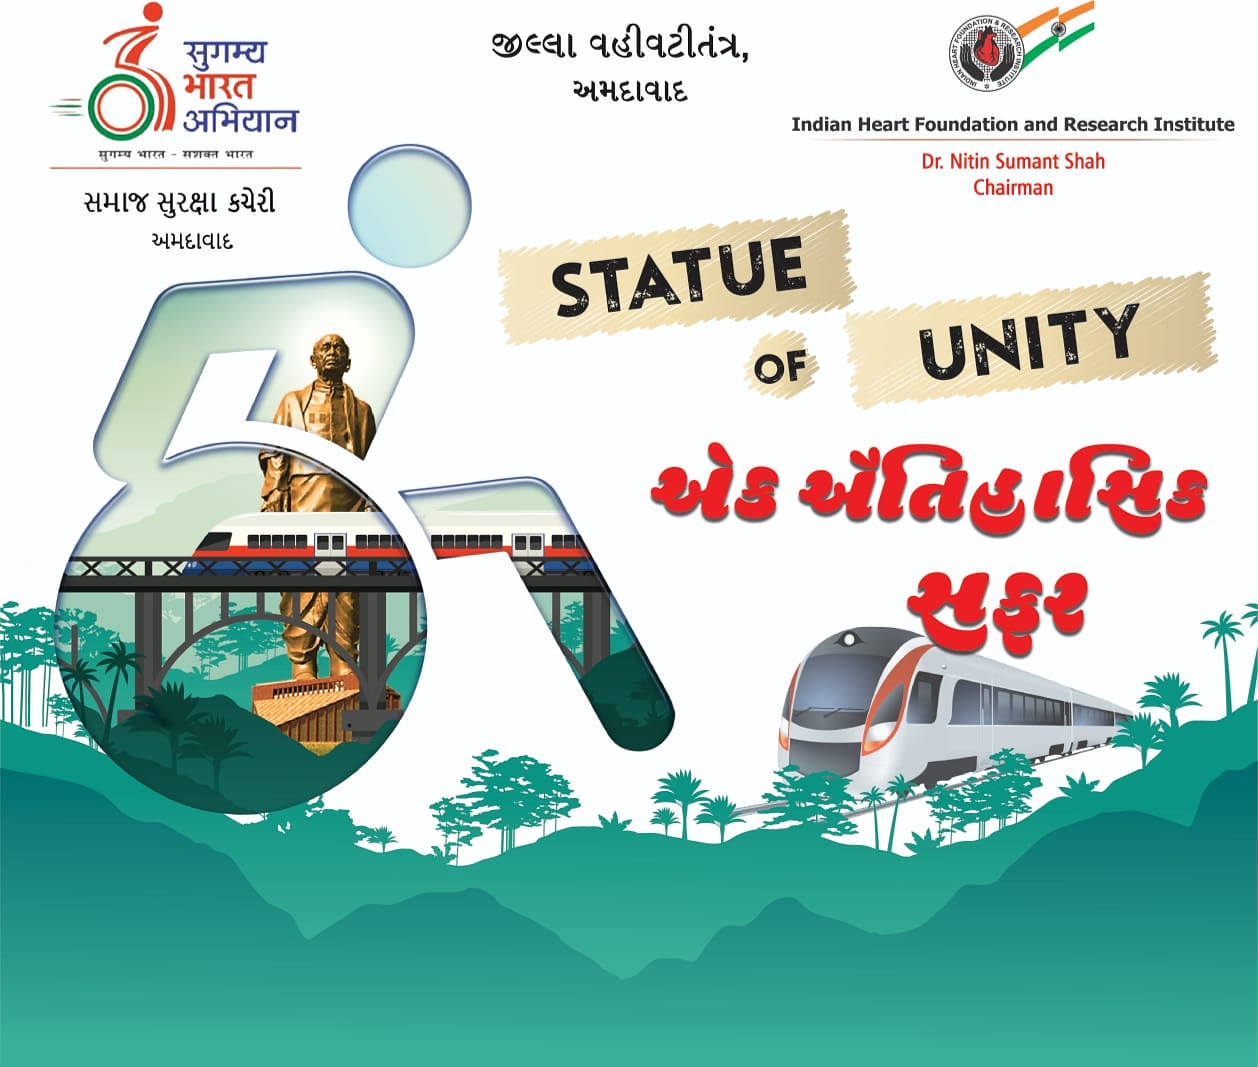 Statue of Unity, Kevadiya Colony.